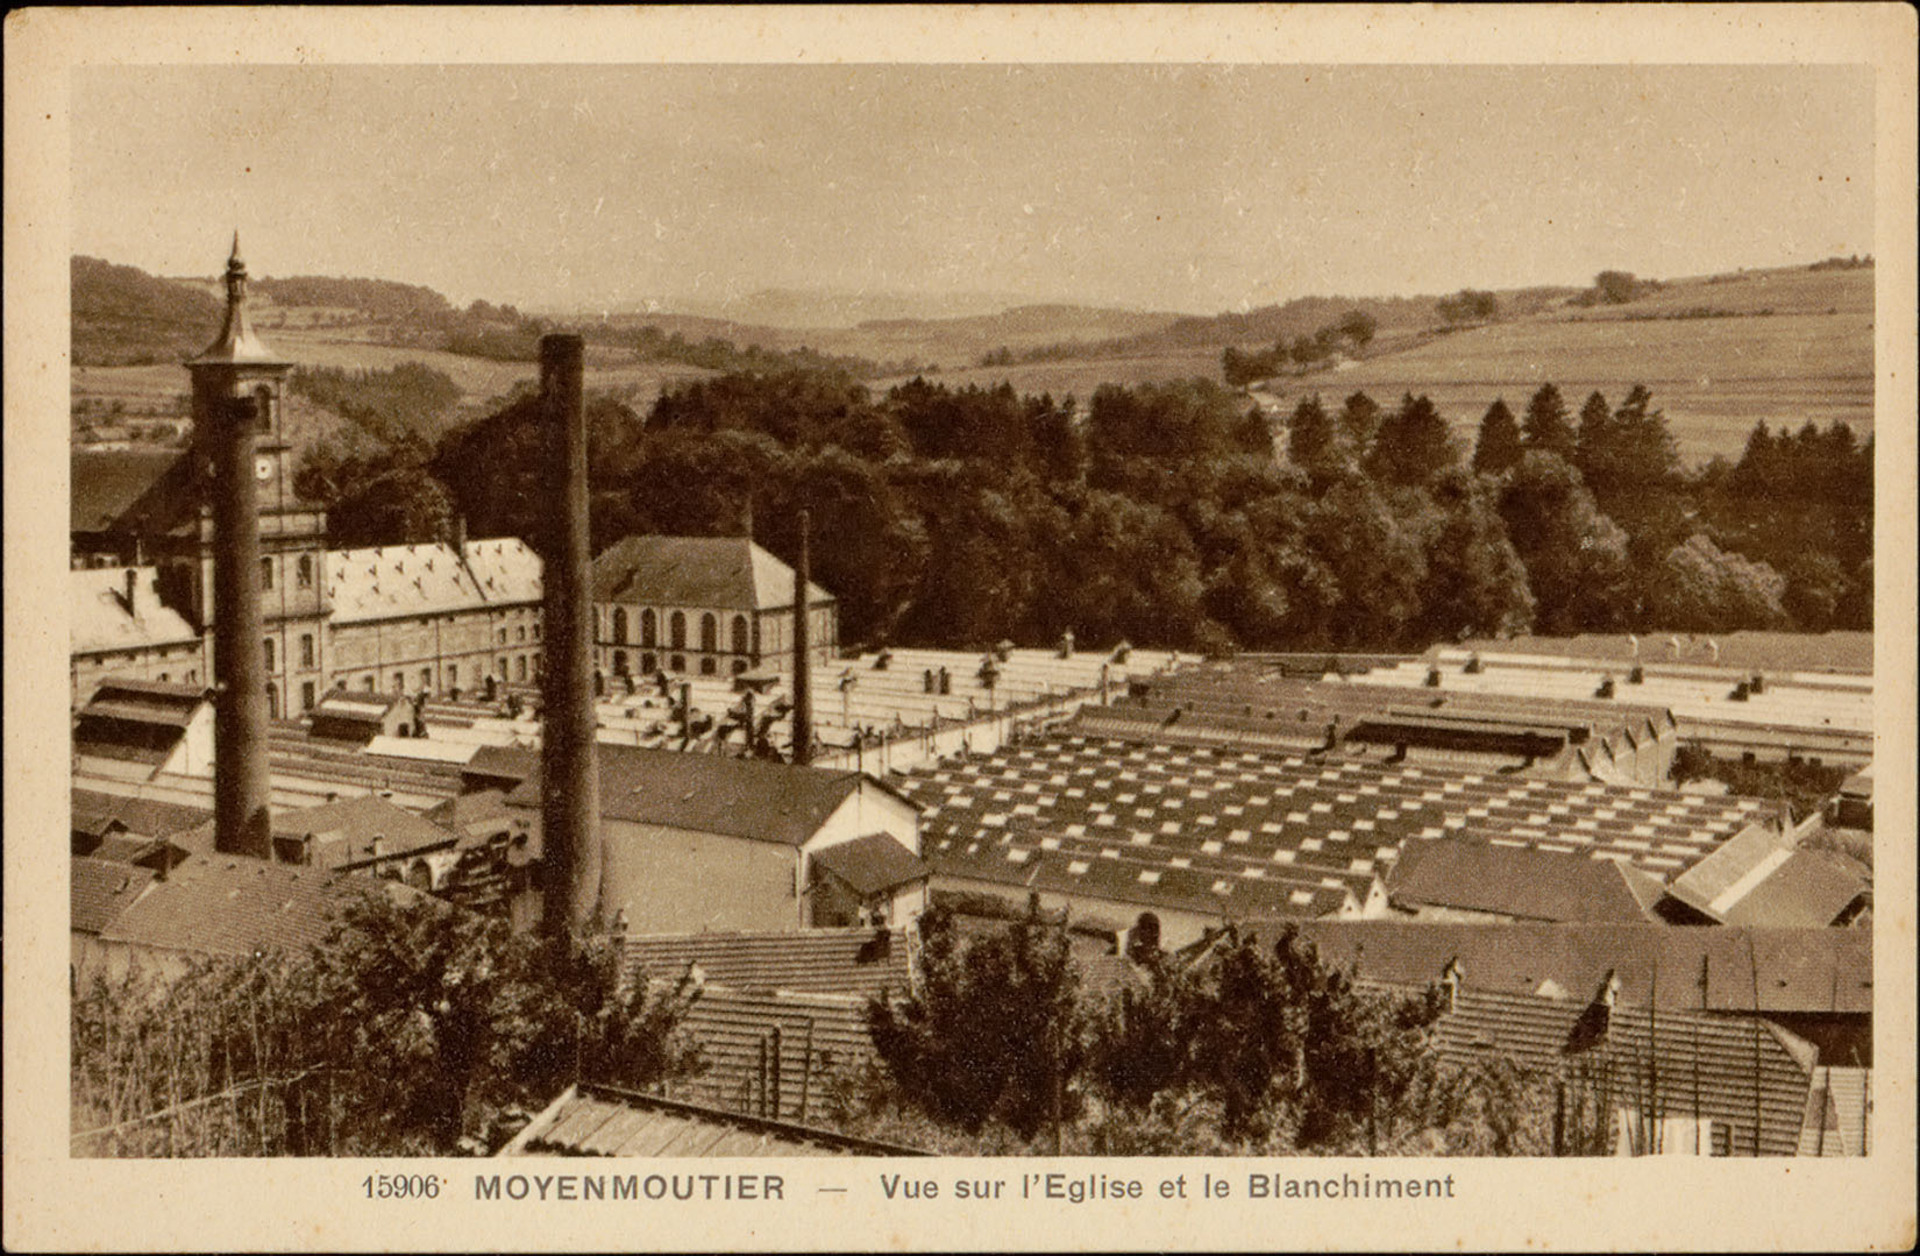 Contenu du Architecture et industrie textile dans les Vosges